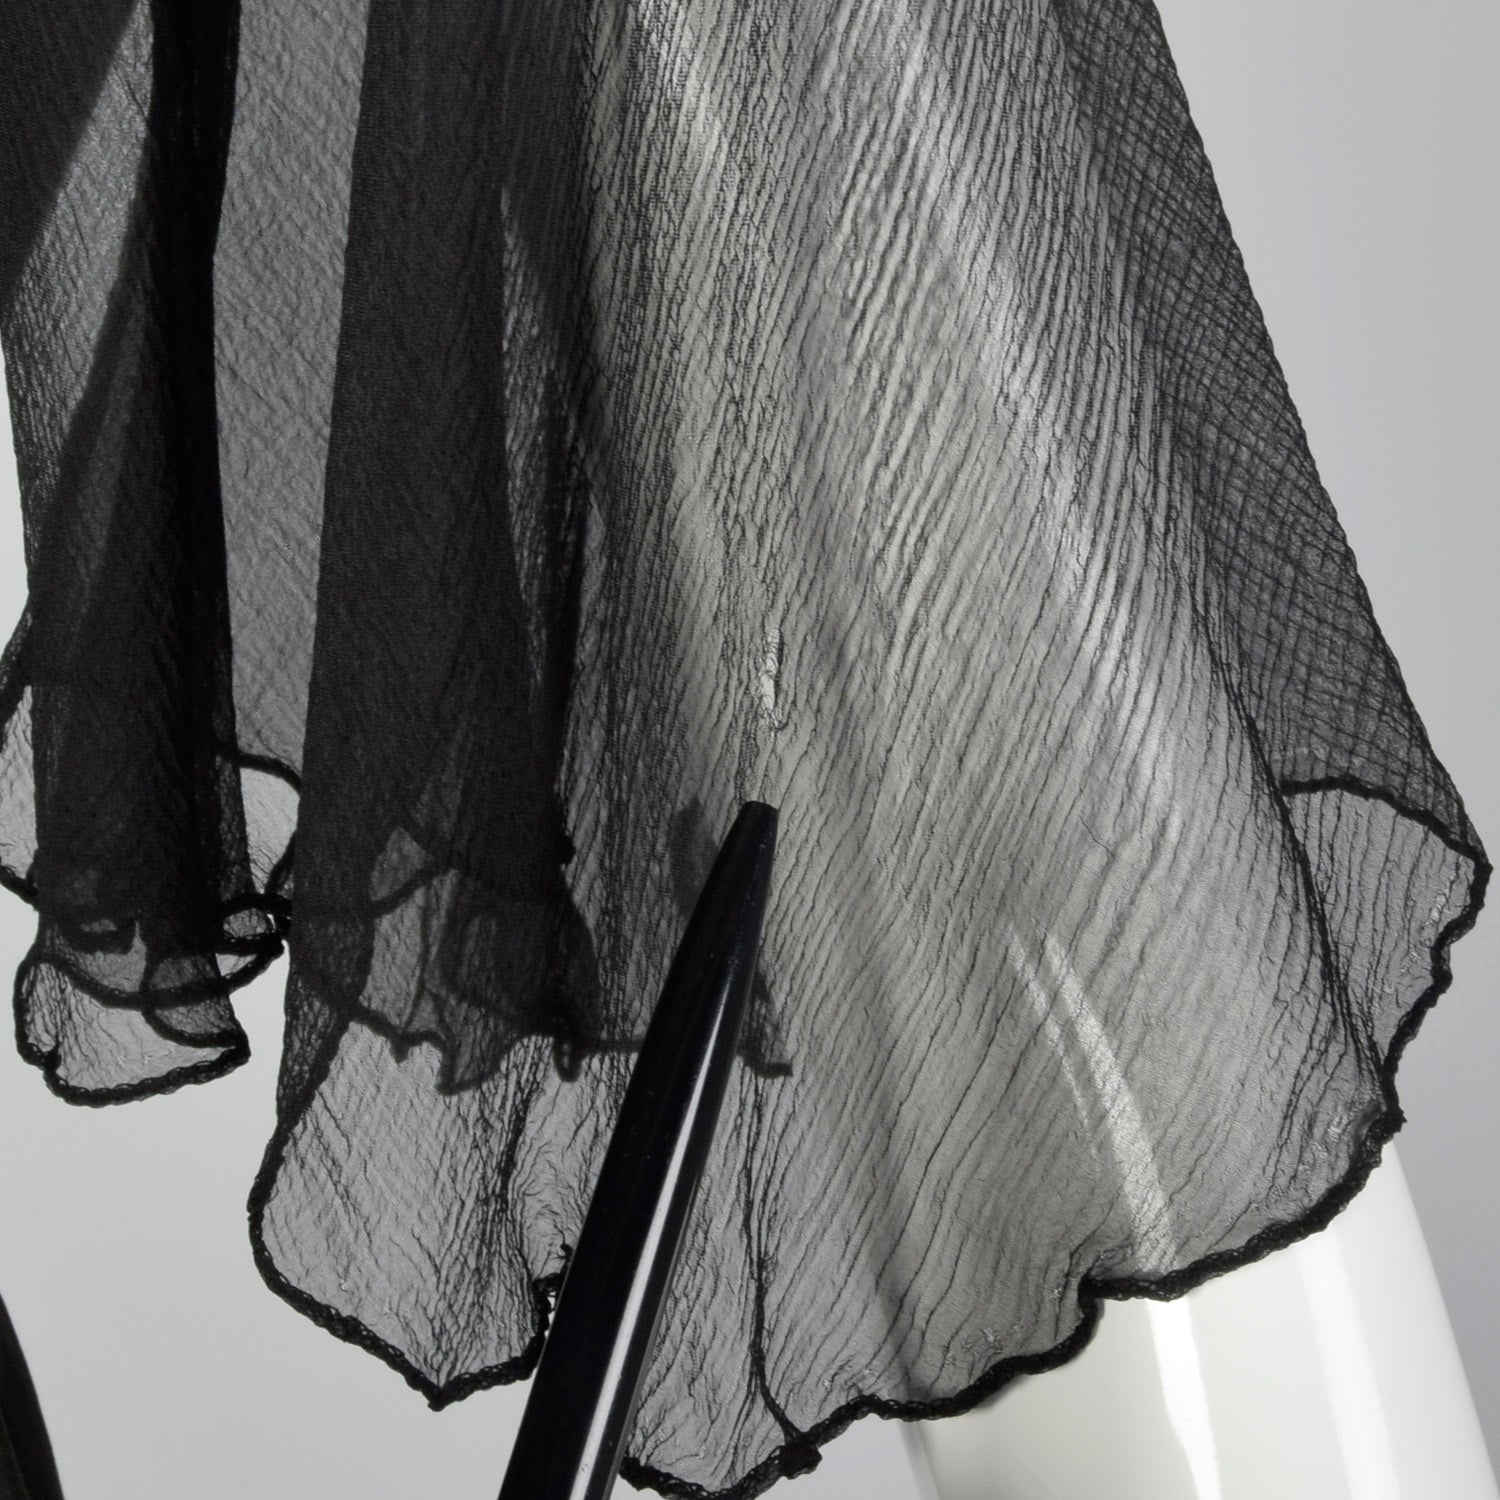 Small 1950s Silk Flutter Sleeve Dress